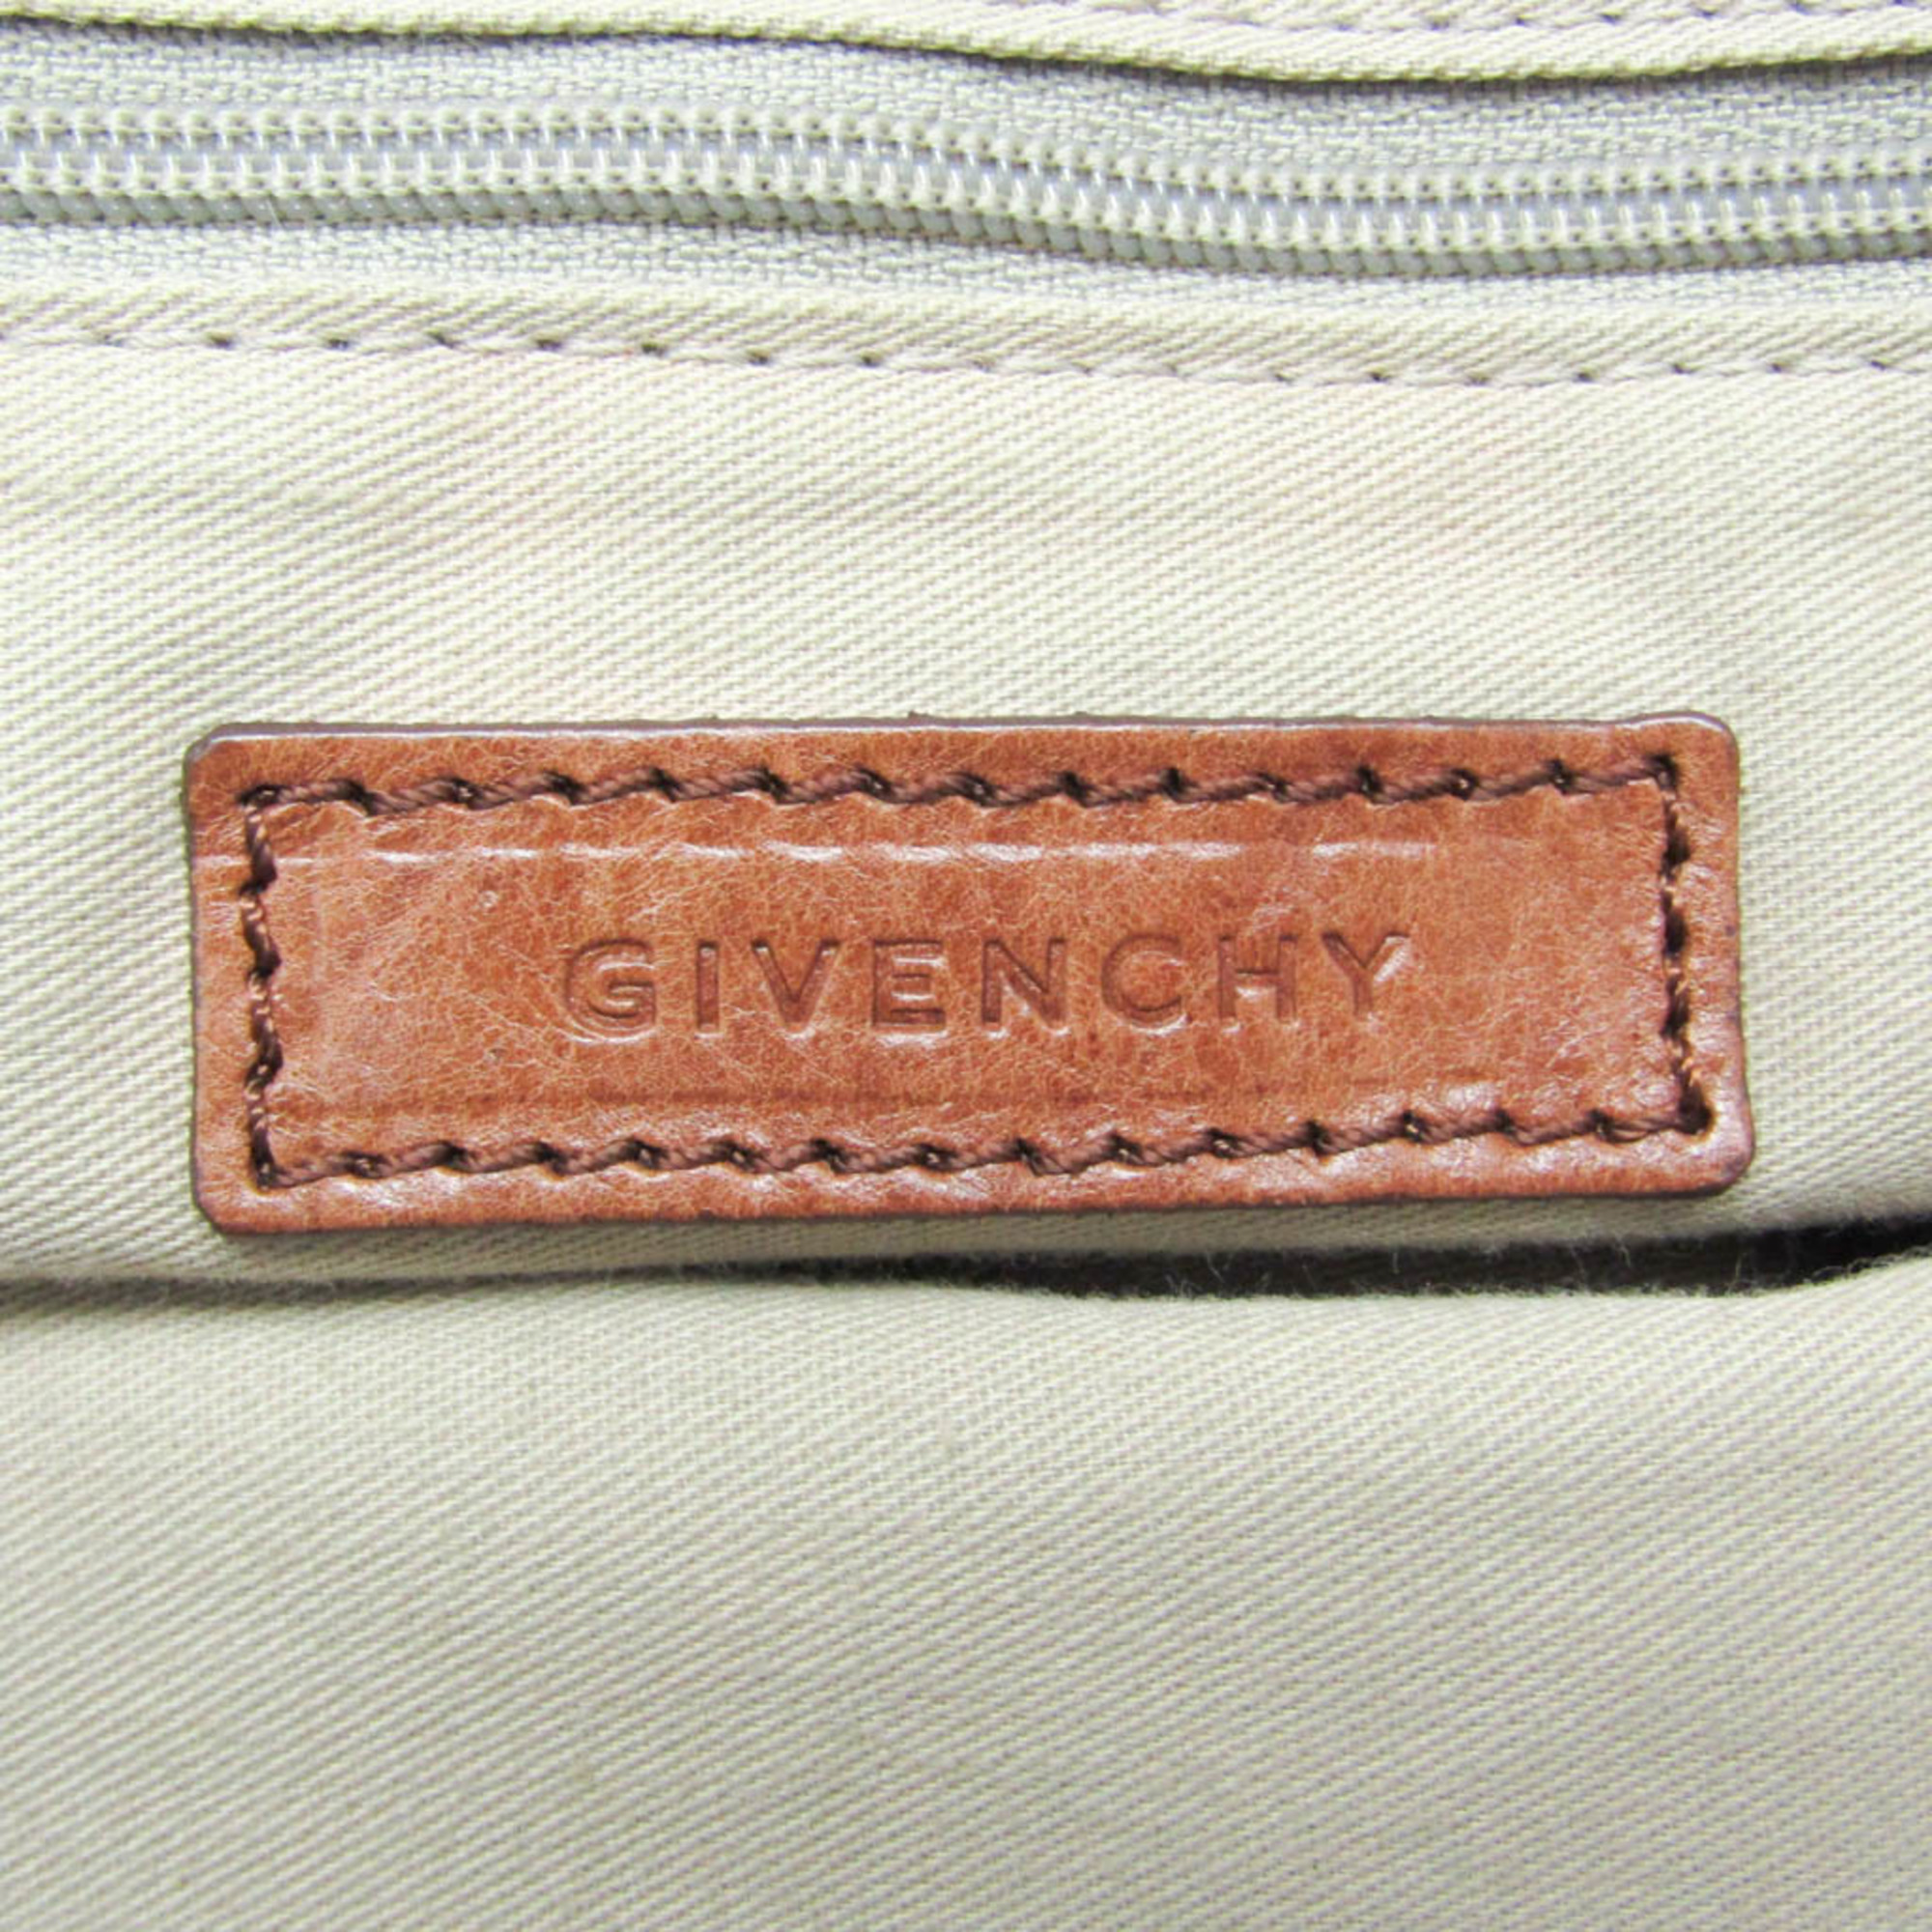 ジバンシィ(Givenchy) ナイチンゲール レディース レザー ハンドバッグ,ショルダーバッグ ブラウン